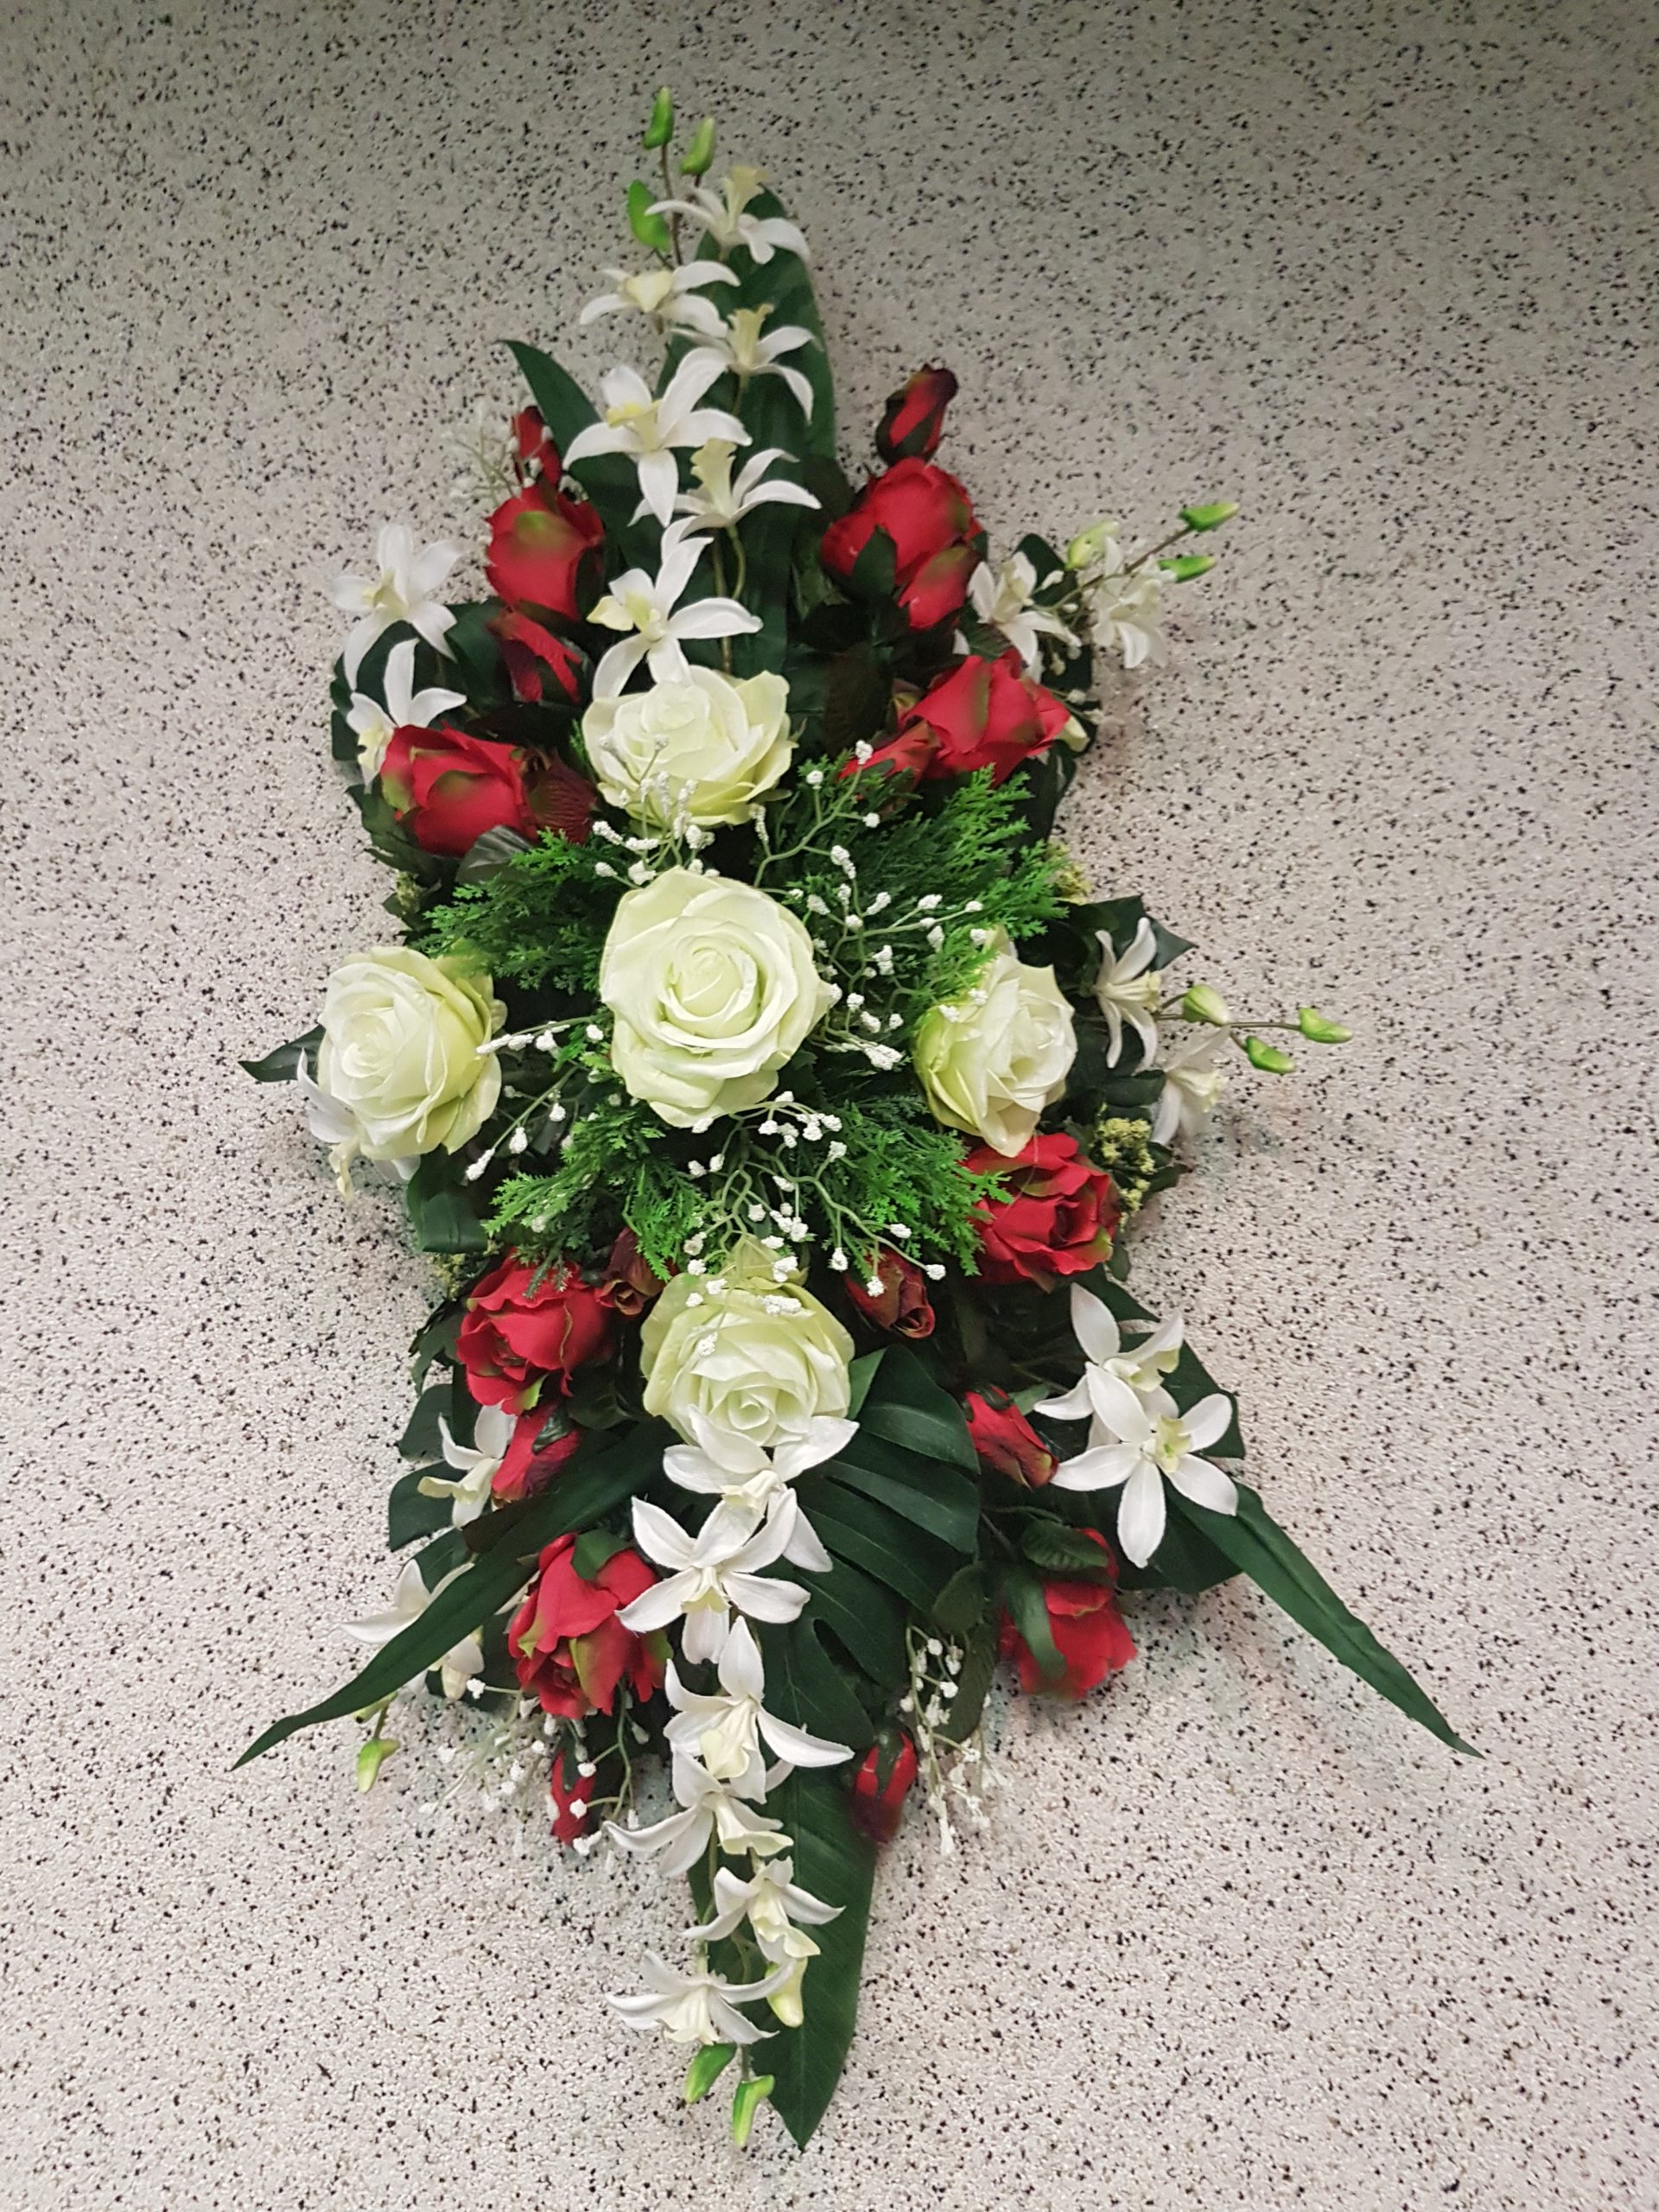 Gerbe 17 - Fleurs pour des obsèques - Funérailles